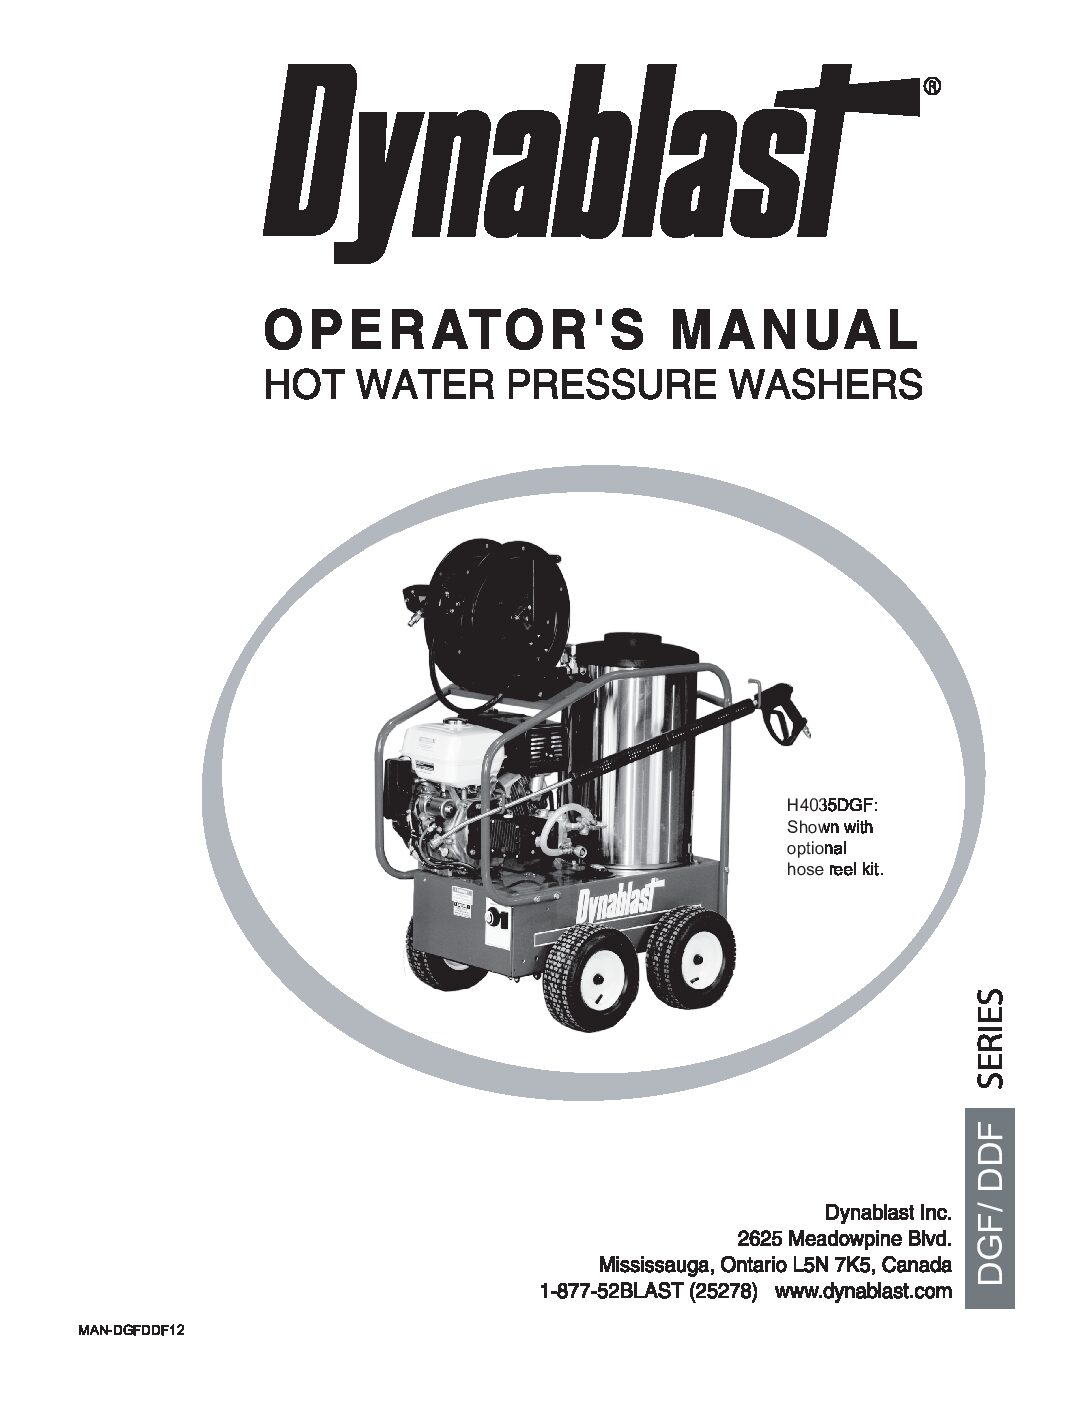 Manual English - Dynablast H4035DGF Hot Water Pressure Washer 